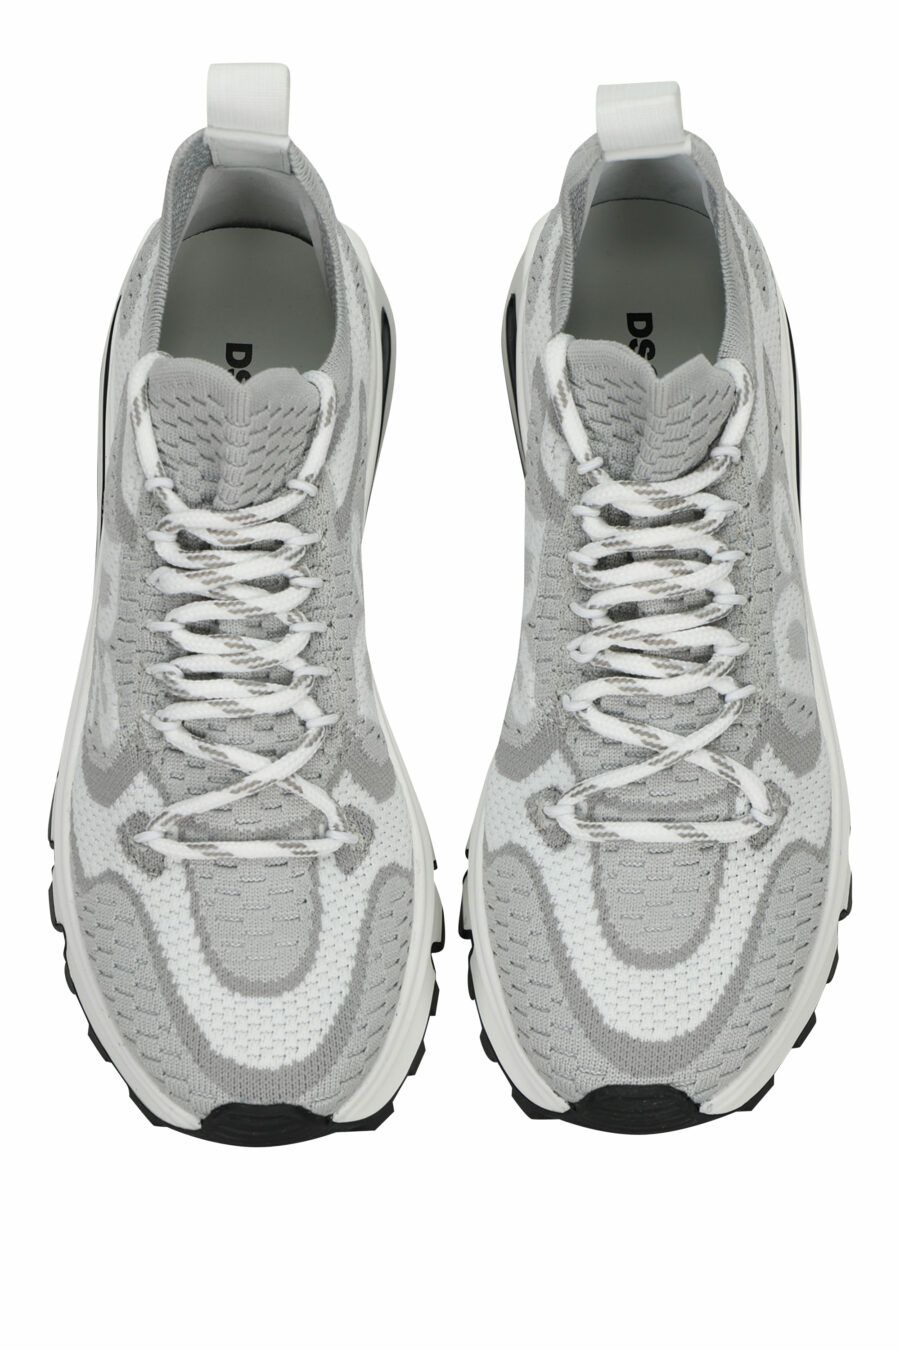 Zapatillas grises "Run D2" con suela cámara de aire - 8055777309858 4